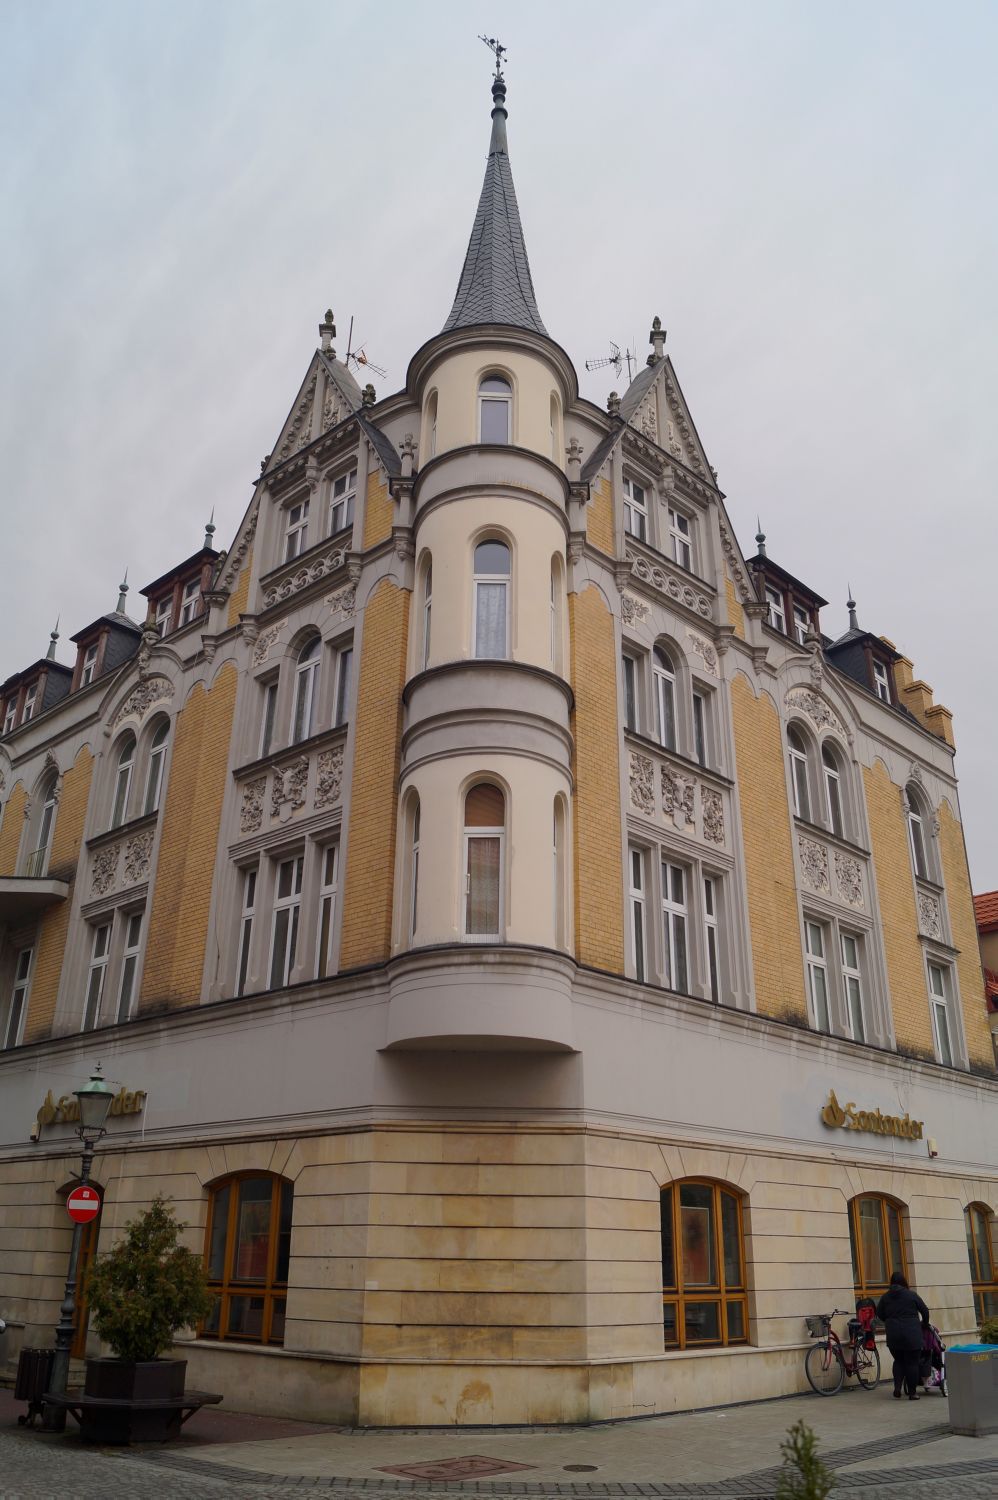 Róg ul. Piastowskiej i Rynku. W latach 1899-1900 z inicjatywy Heimanna Cohna na miejscu poprzedniego wzniesiono nowy budynek mieszkalny z hotelem i restauracją Cohna na parterze.